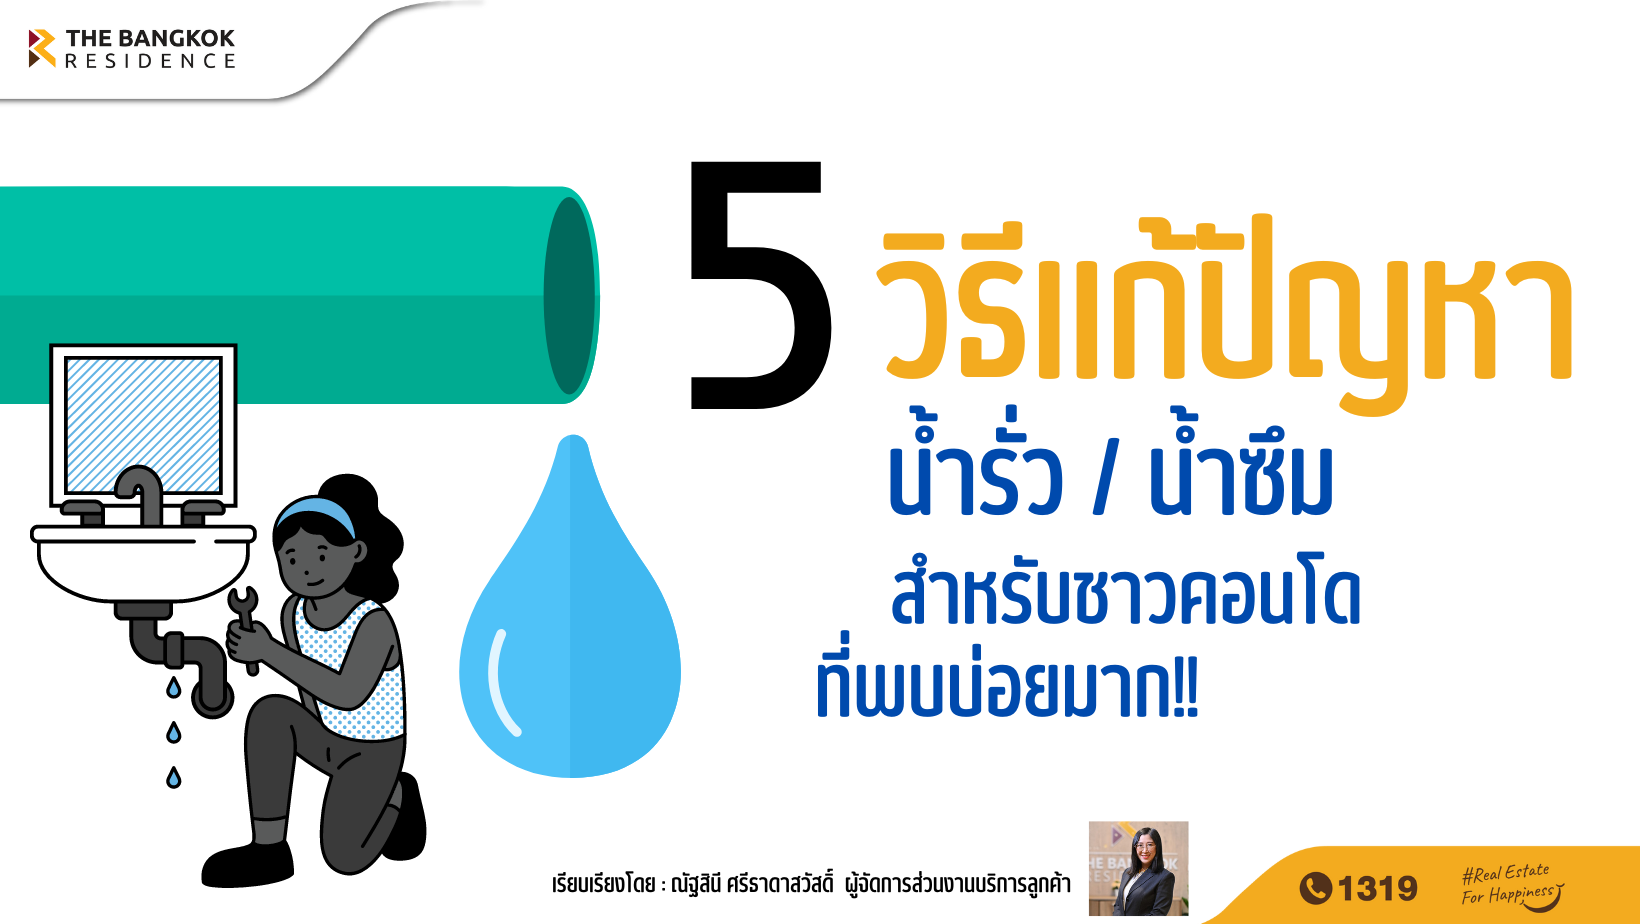 5 วิธีแก้ปัญหาน้ำรั่ว น้ำซึมสำหรับชาวคอนโดที่พบบ่อยมาก!!